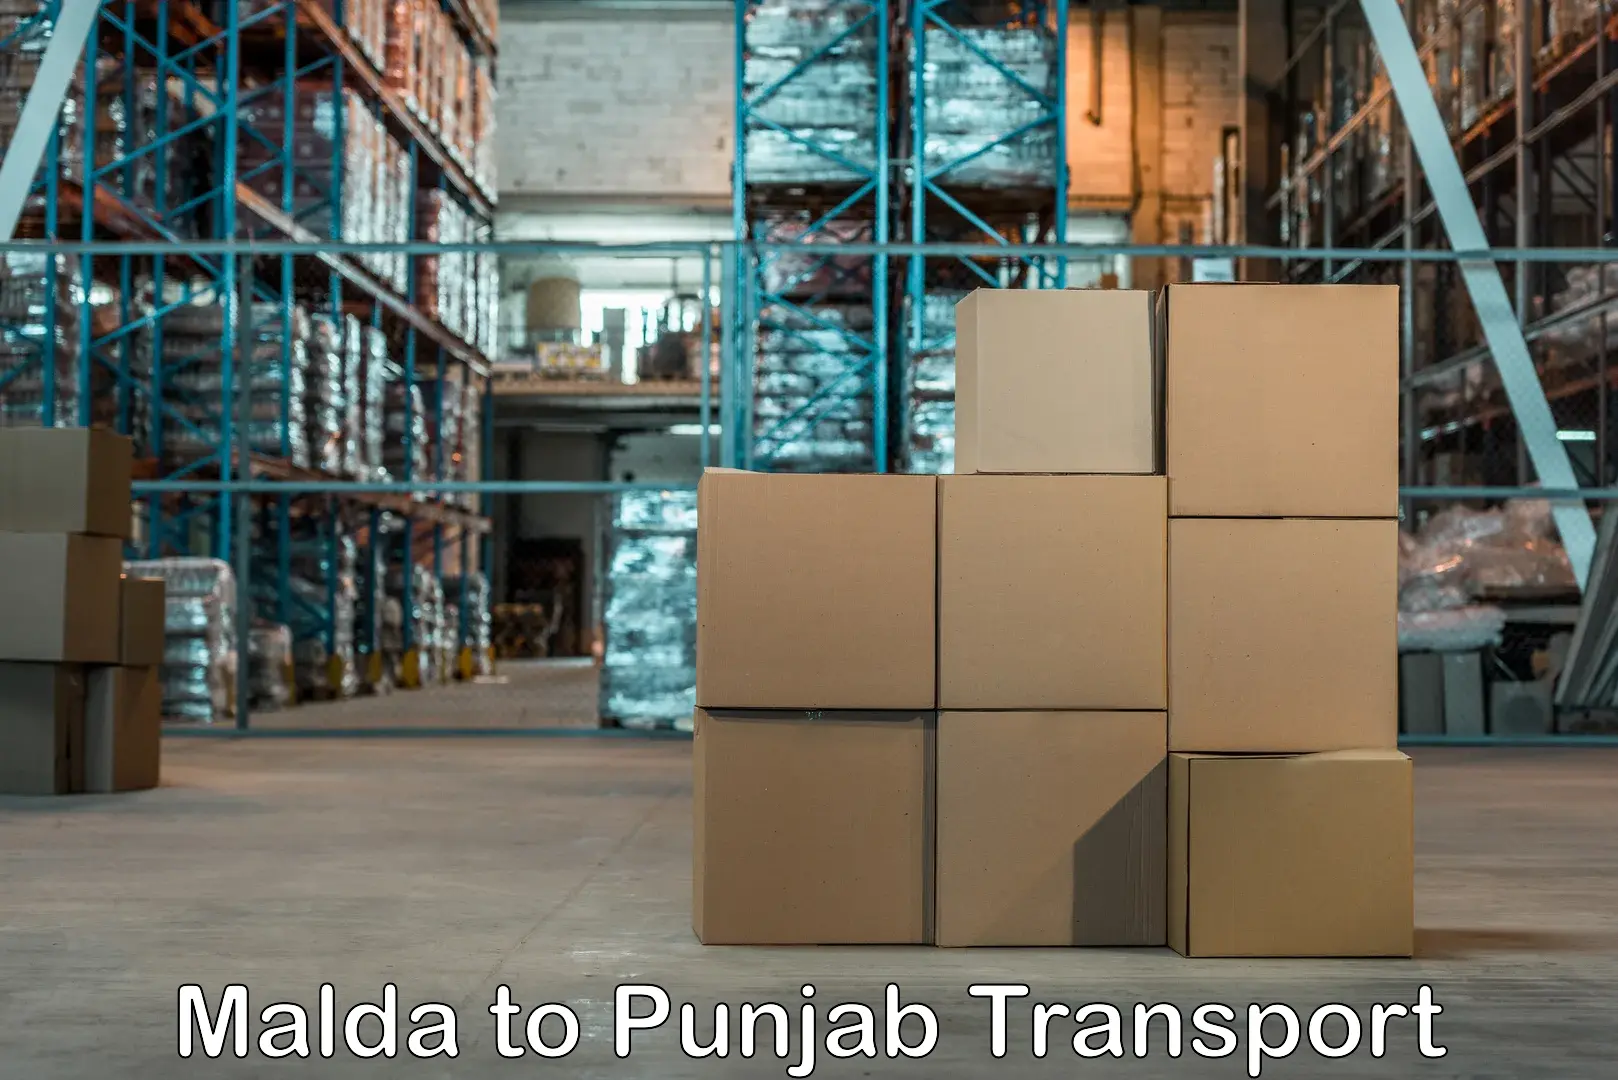 Door to door transport services Malda to Punjab